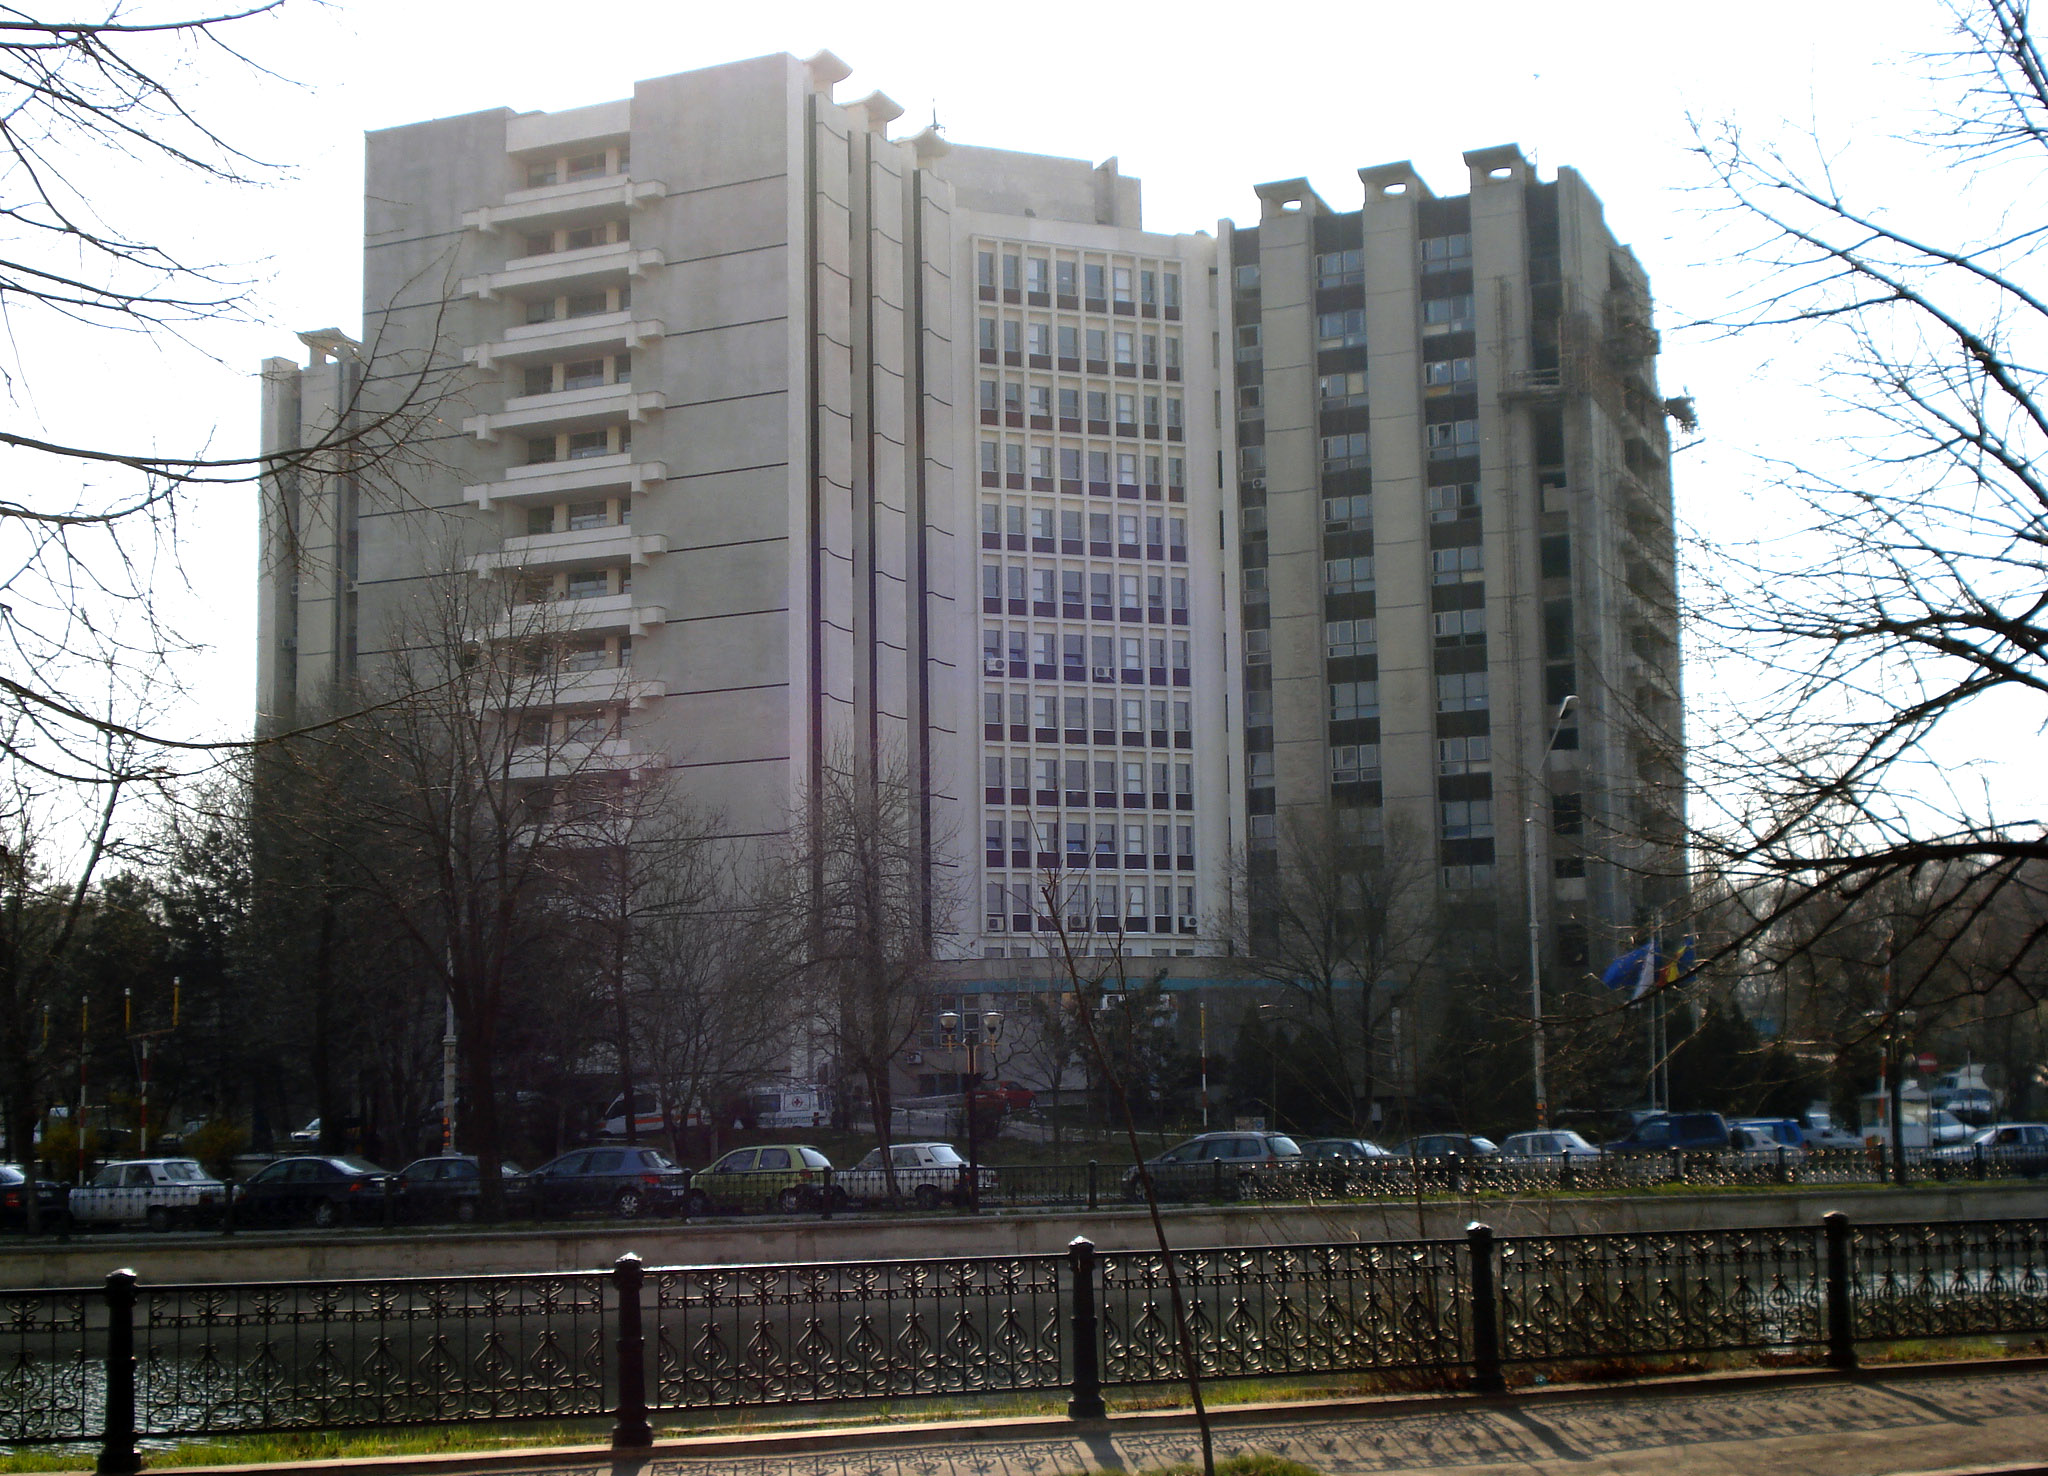 Spitalul Universitar din Capitala este unul dintre locurile preferate ale sinucigasilor